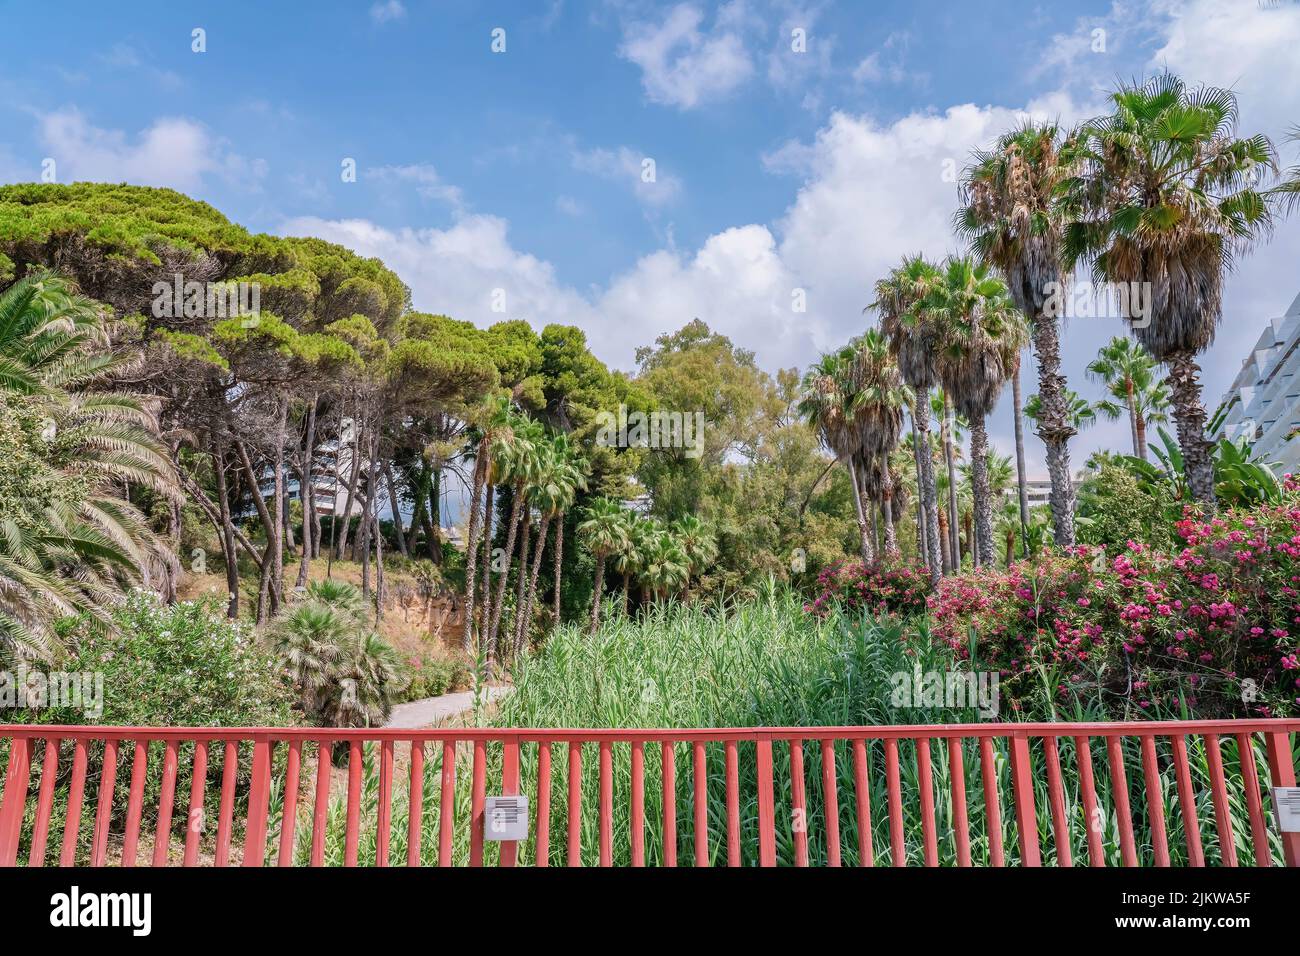 Wilde Büsche mit blühenden Bougainvillea-Blumen, Palmen, großes grünes Gras, Bäume in Marbella, Spanien Stockfoto